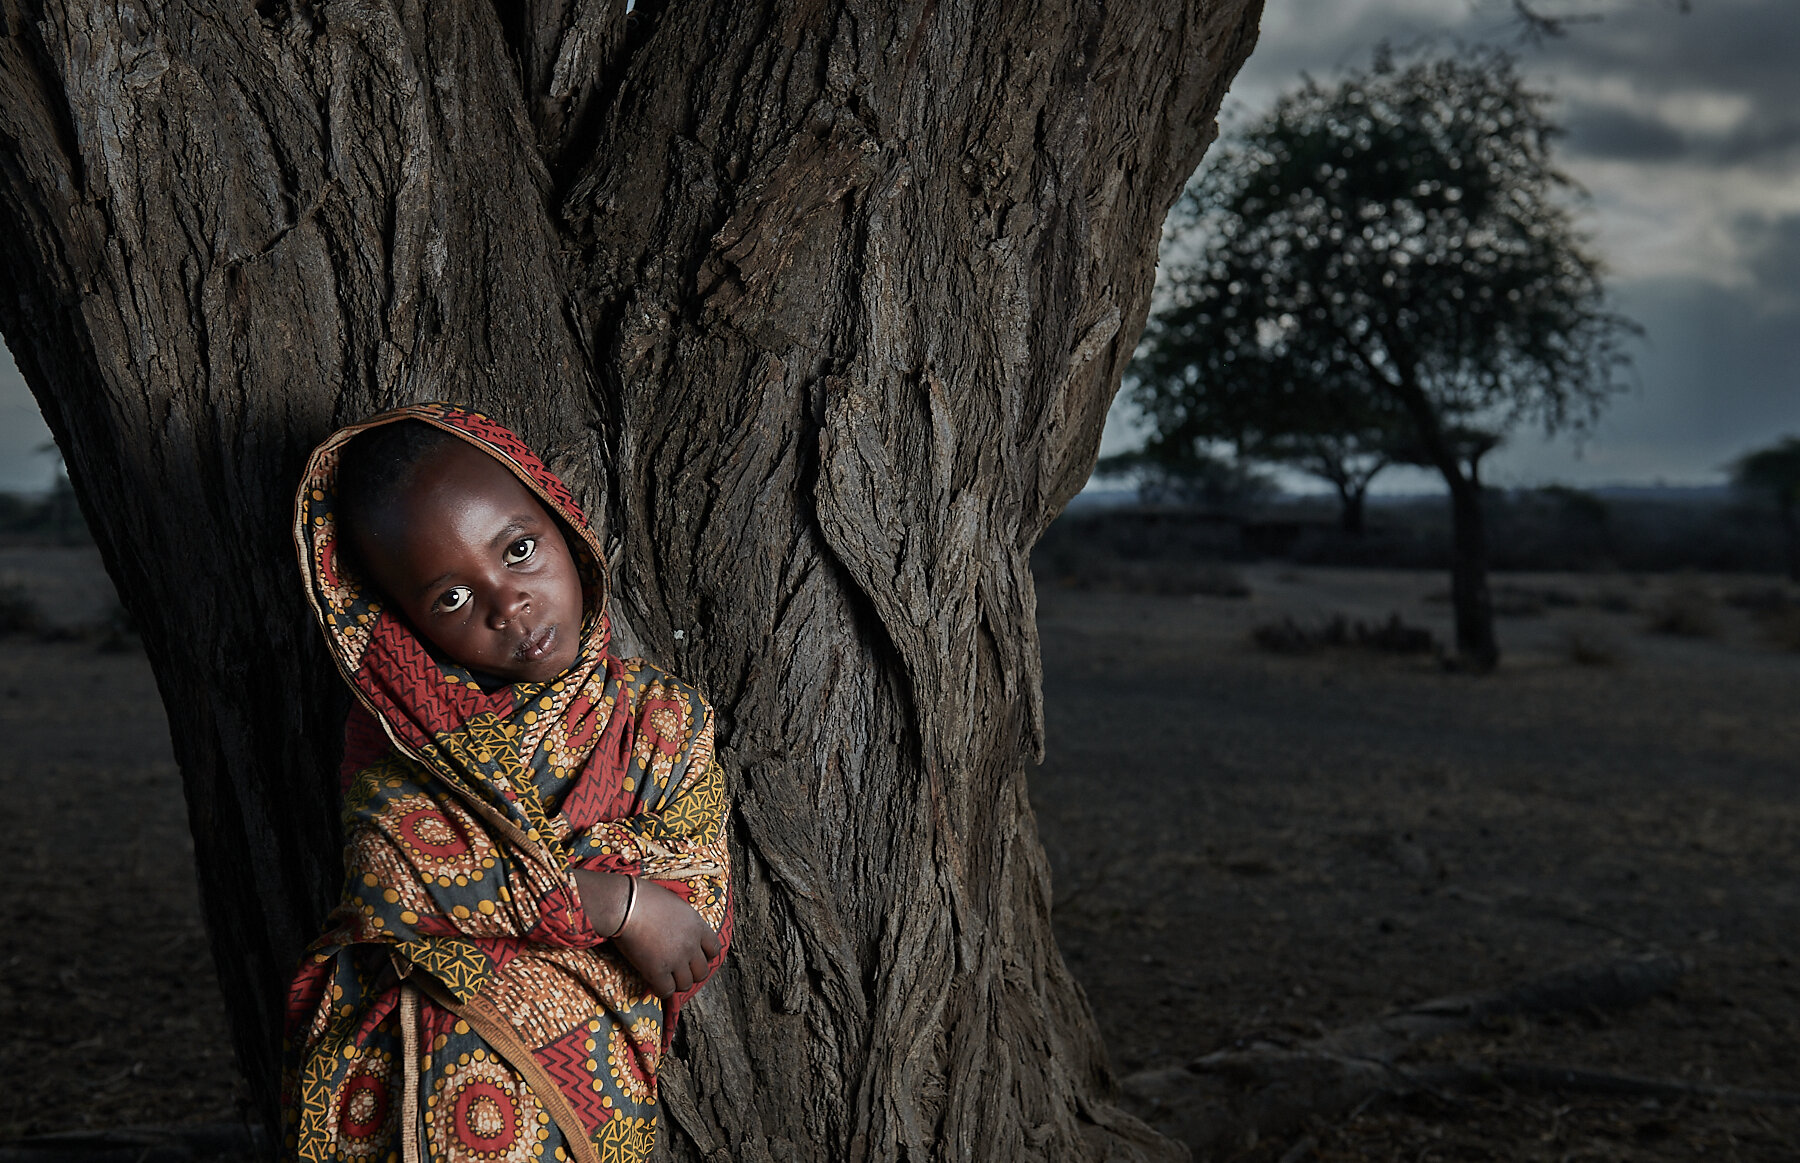 Datoga girl, village near Lake Eyasi, northern Tanzania